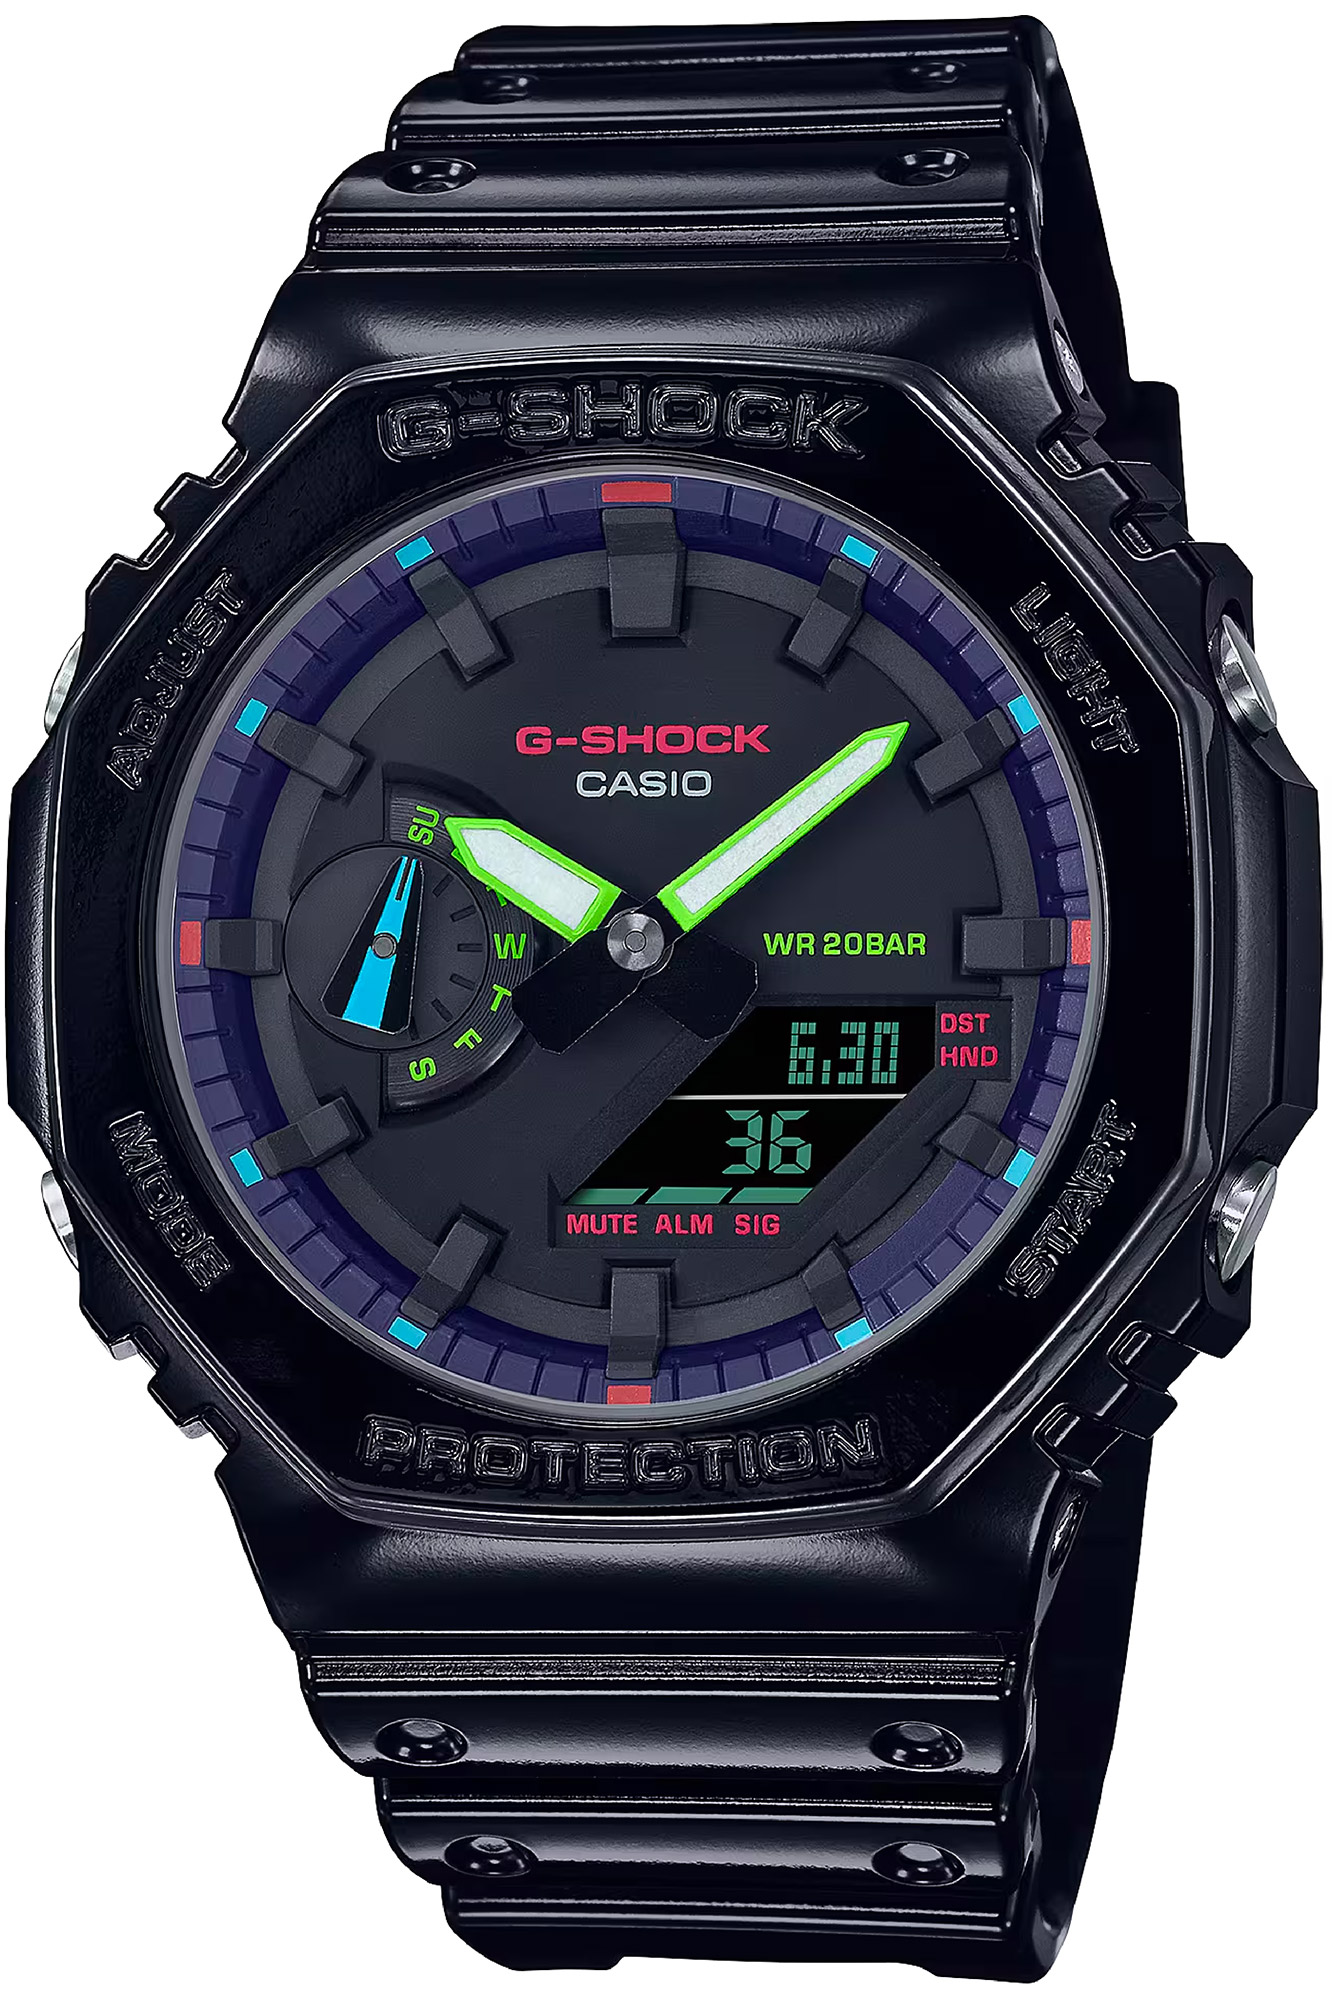 Watch CASIO G-Shock ga-2100rgb-1aer